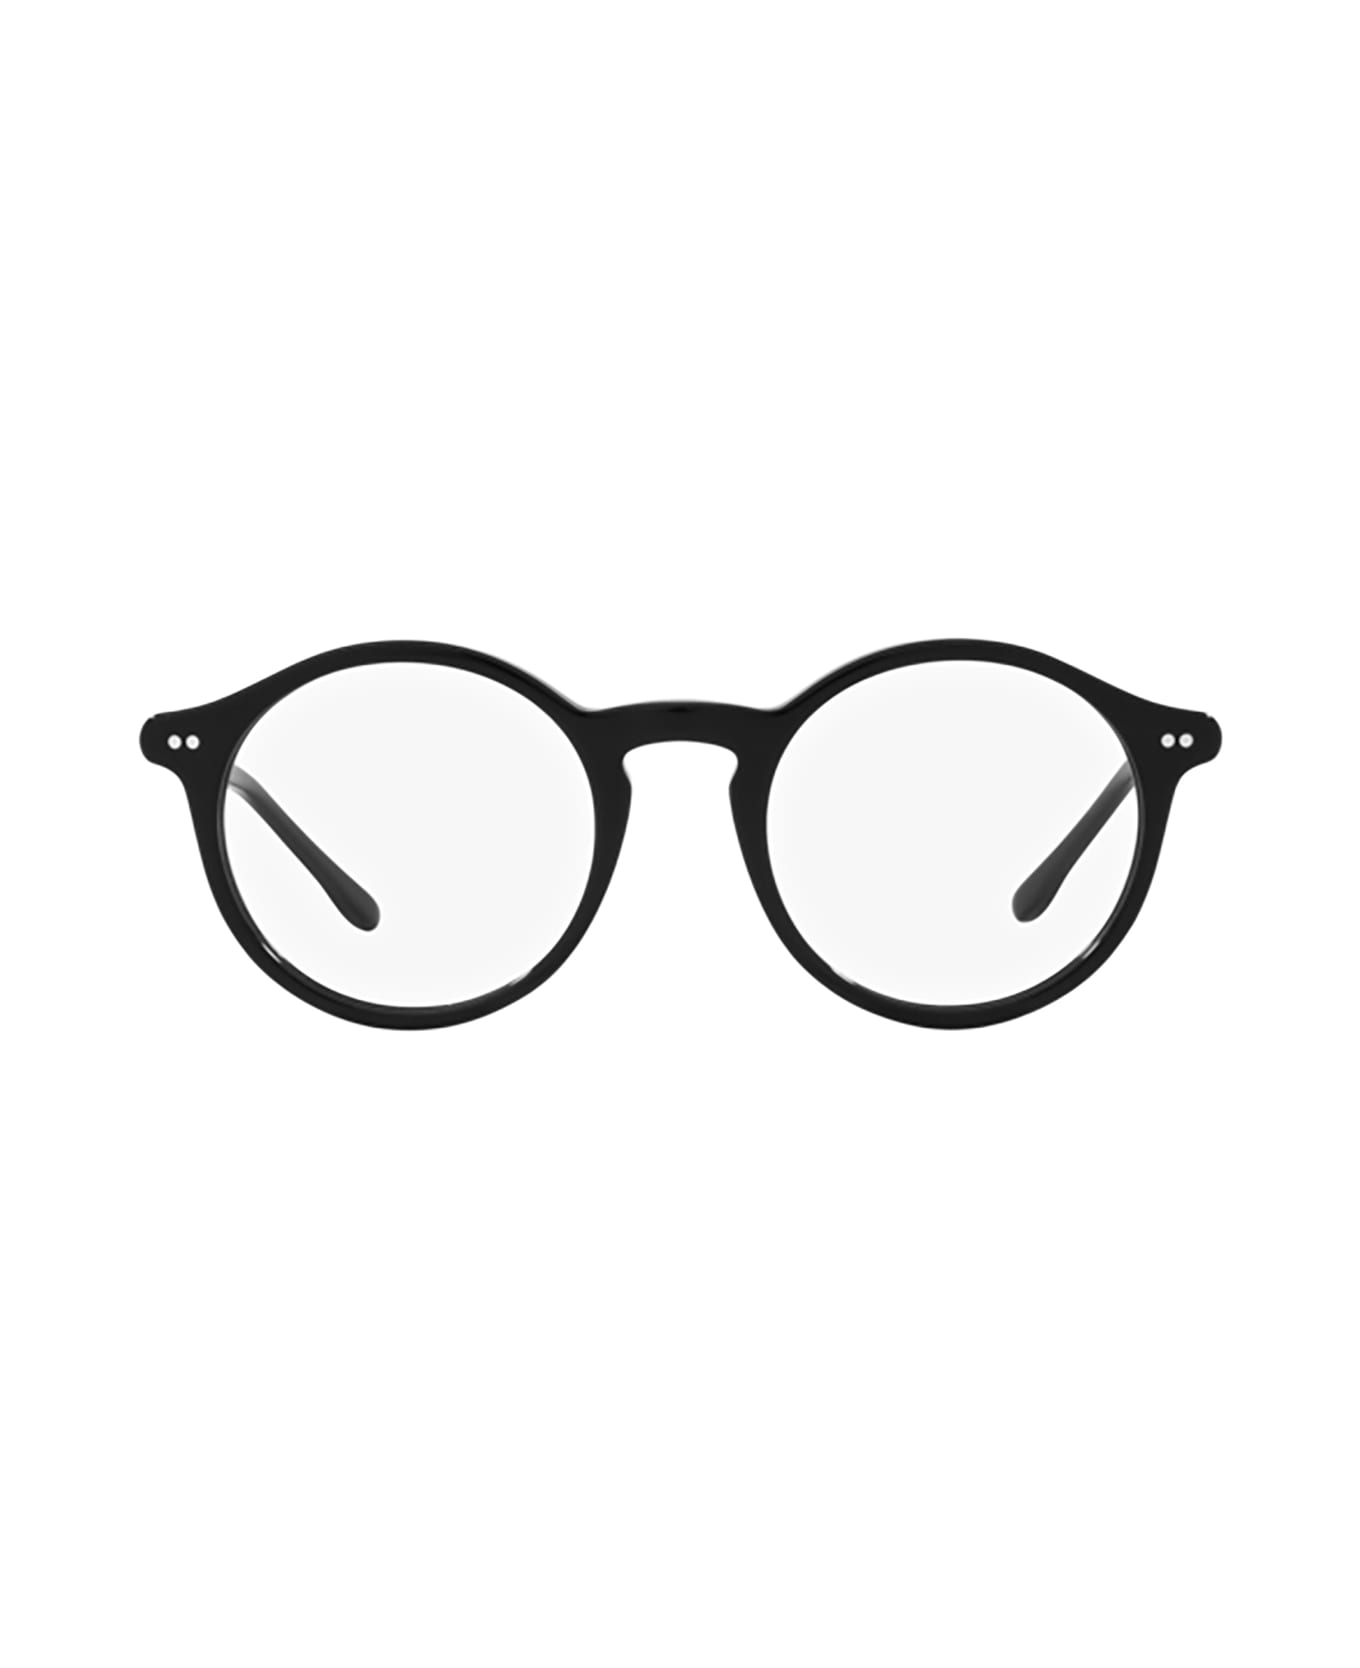 Polo Ralph Lauren Ph2260 Shiny Black Glasses - Shiny Black